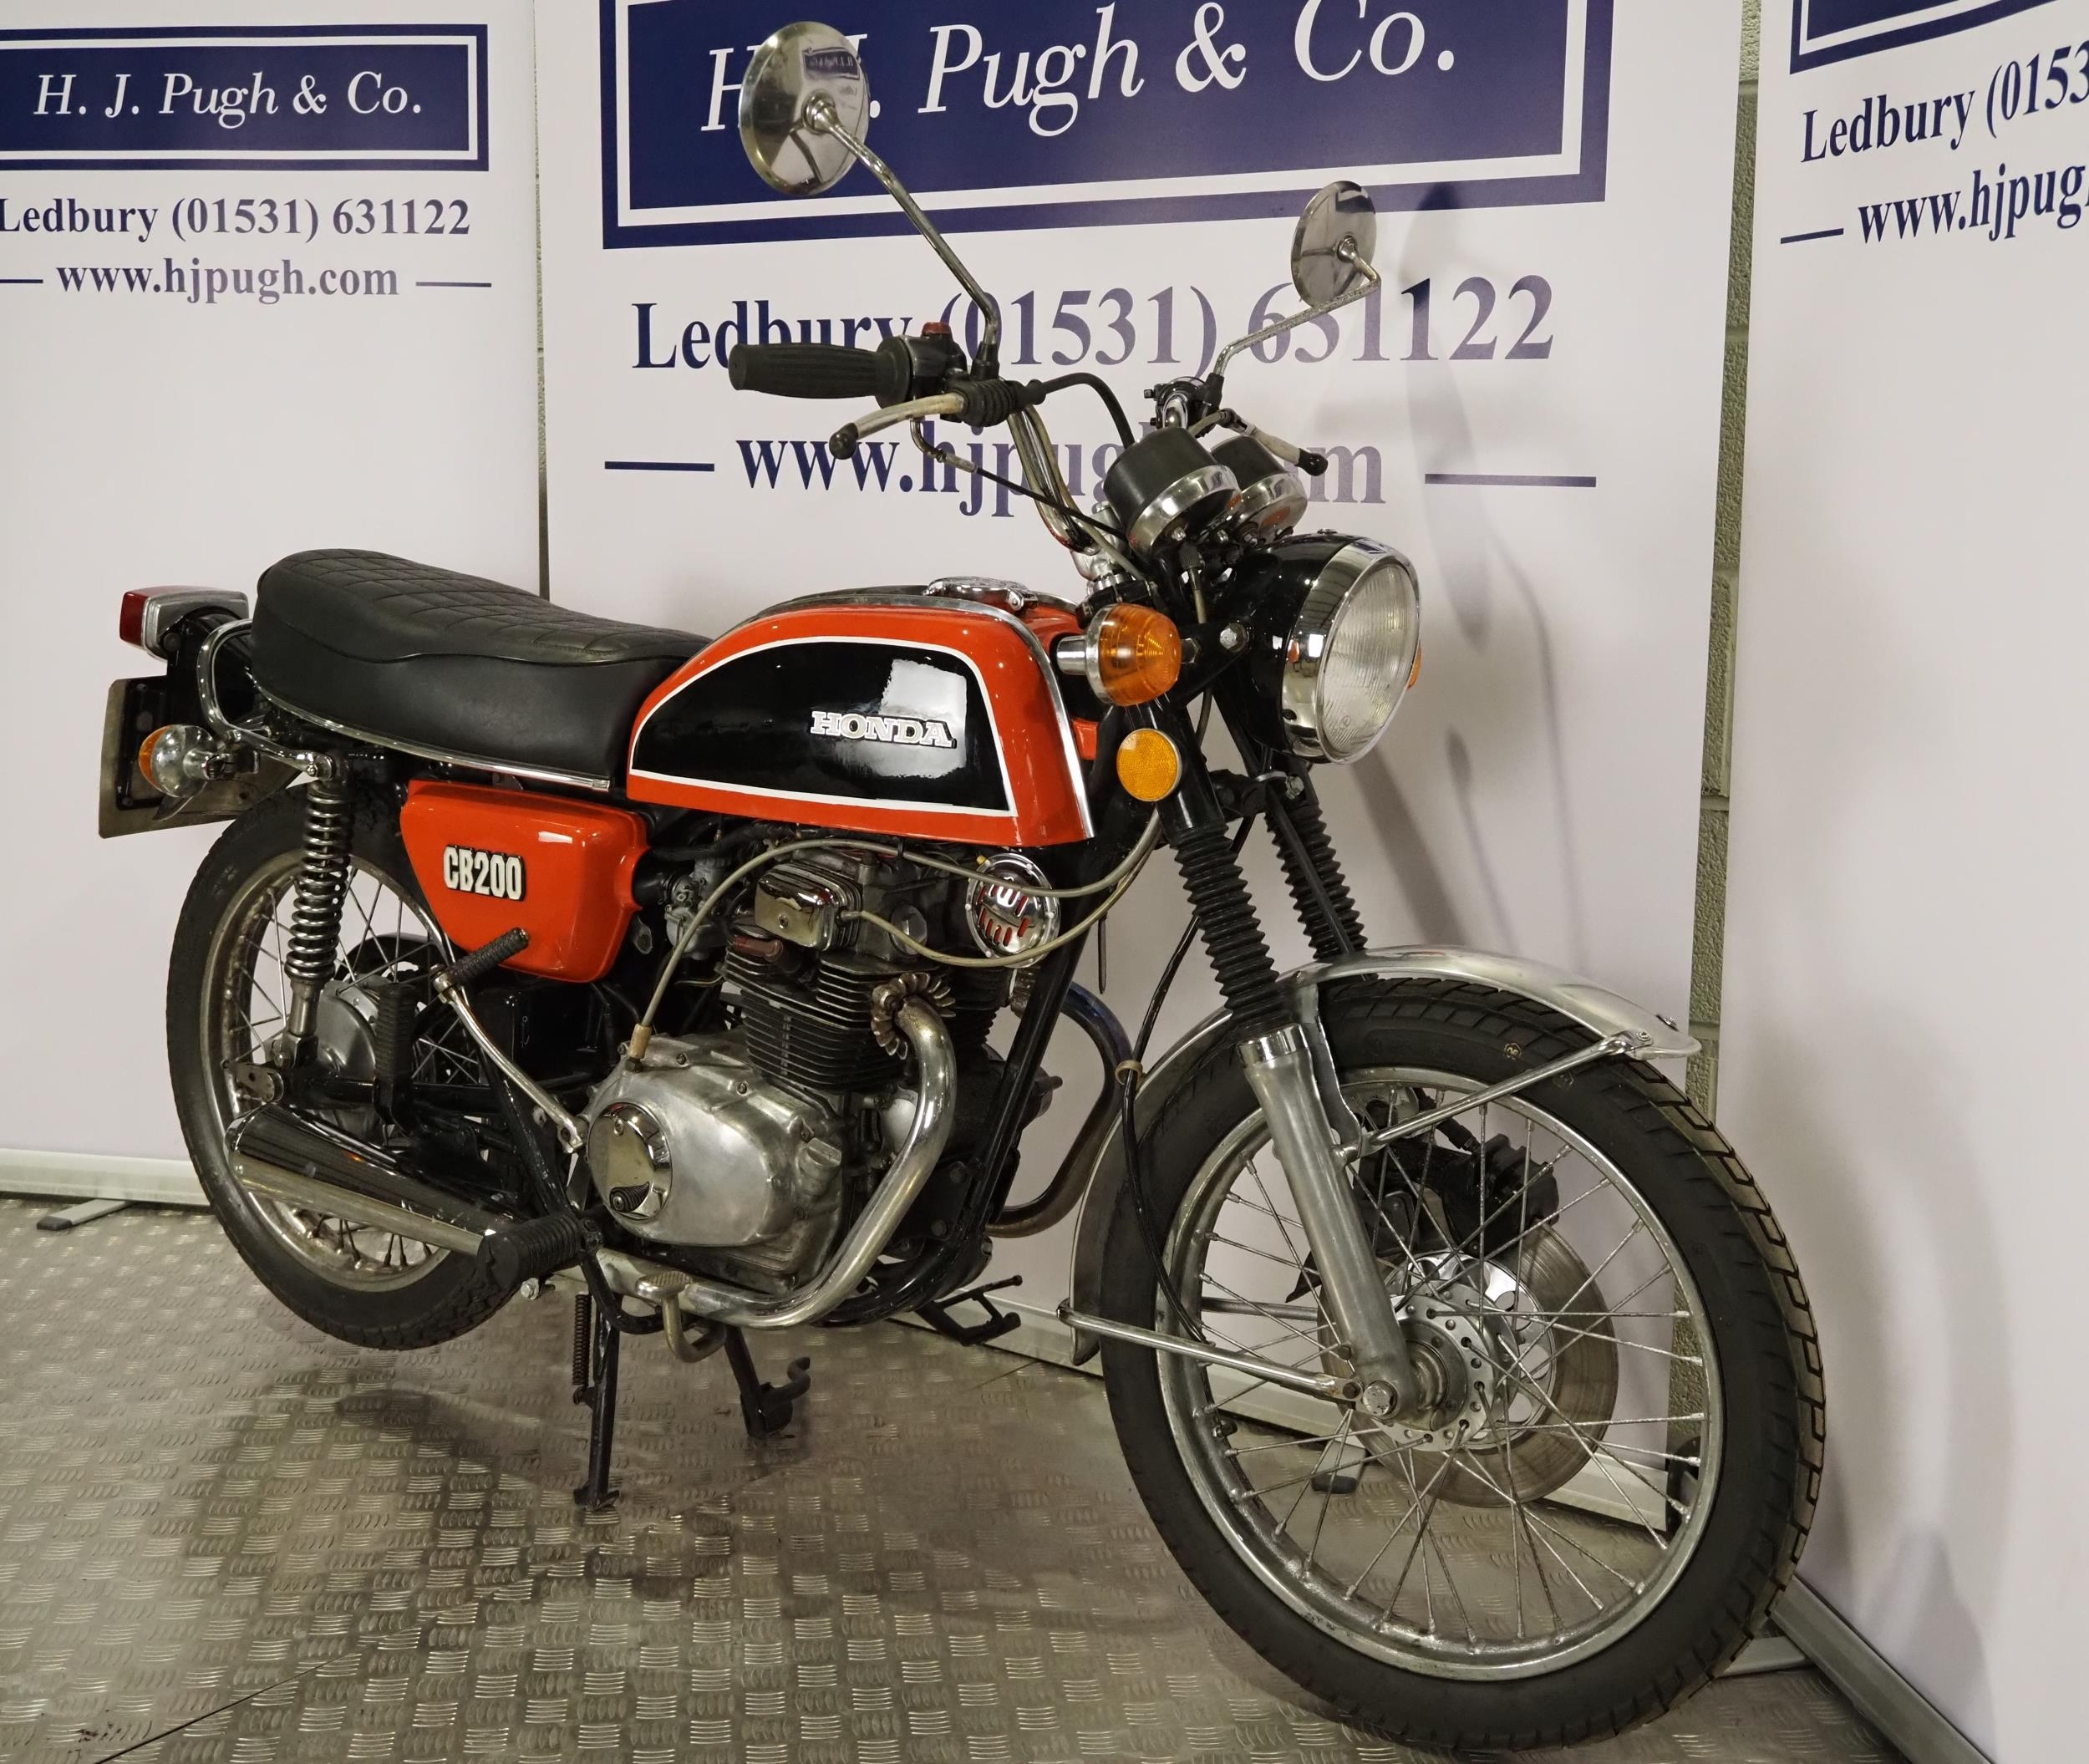 Honda CB200 motorcycle. 1977. 198cc Frame No. CB200 1039706 Engine No. CB200-1041972 Runs and rides. - Image 2 of 6